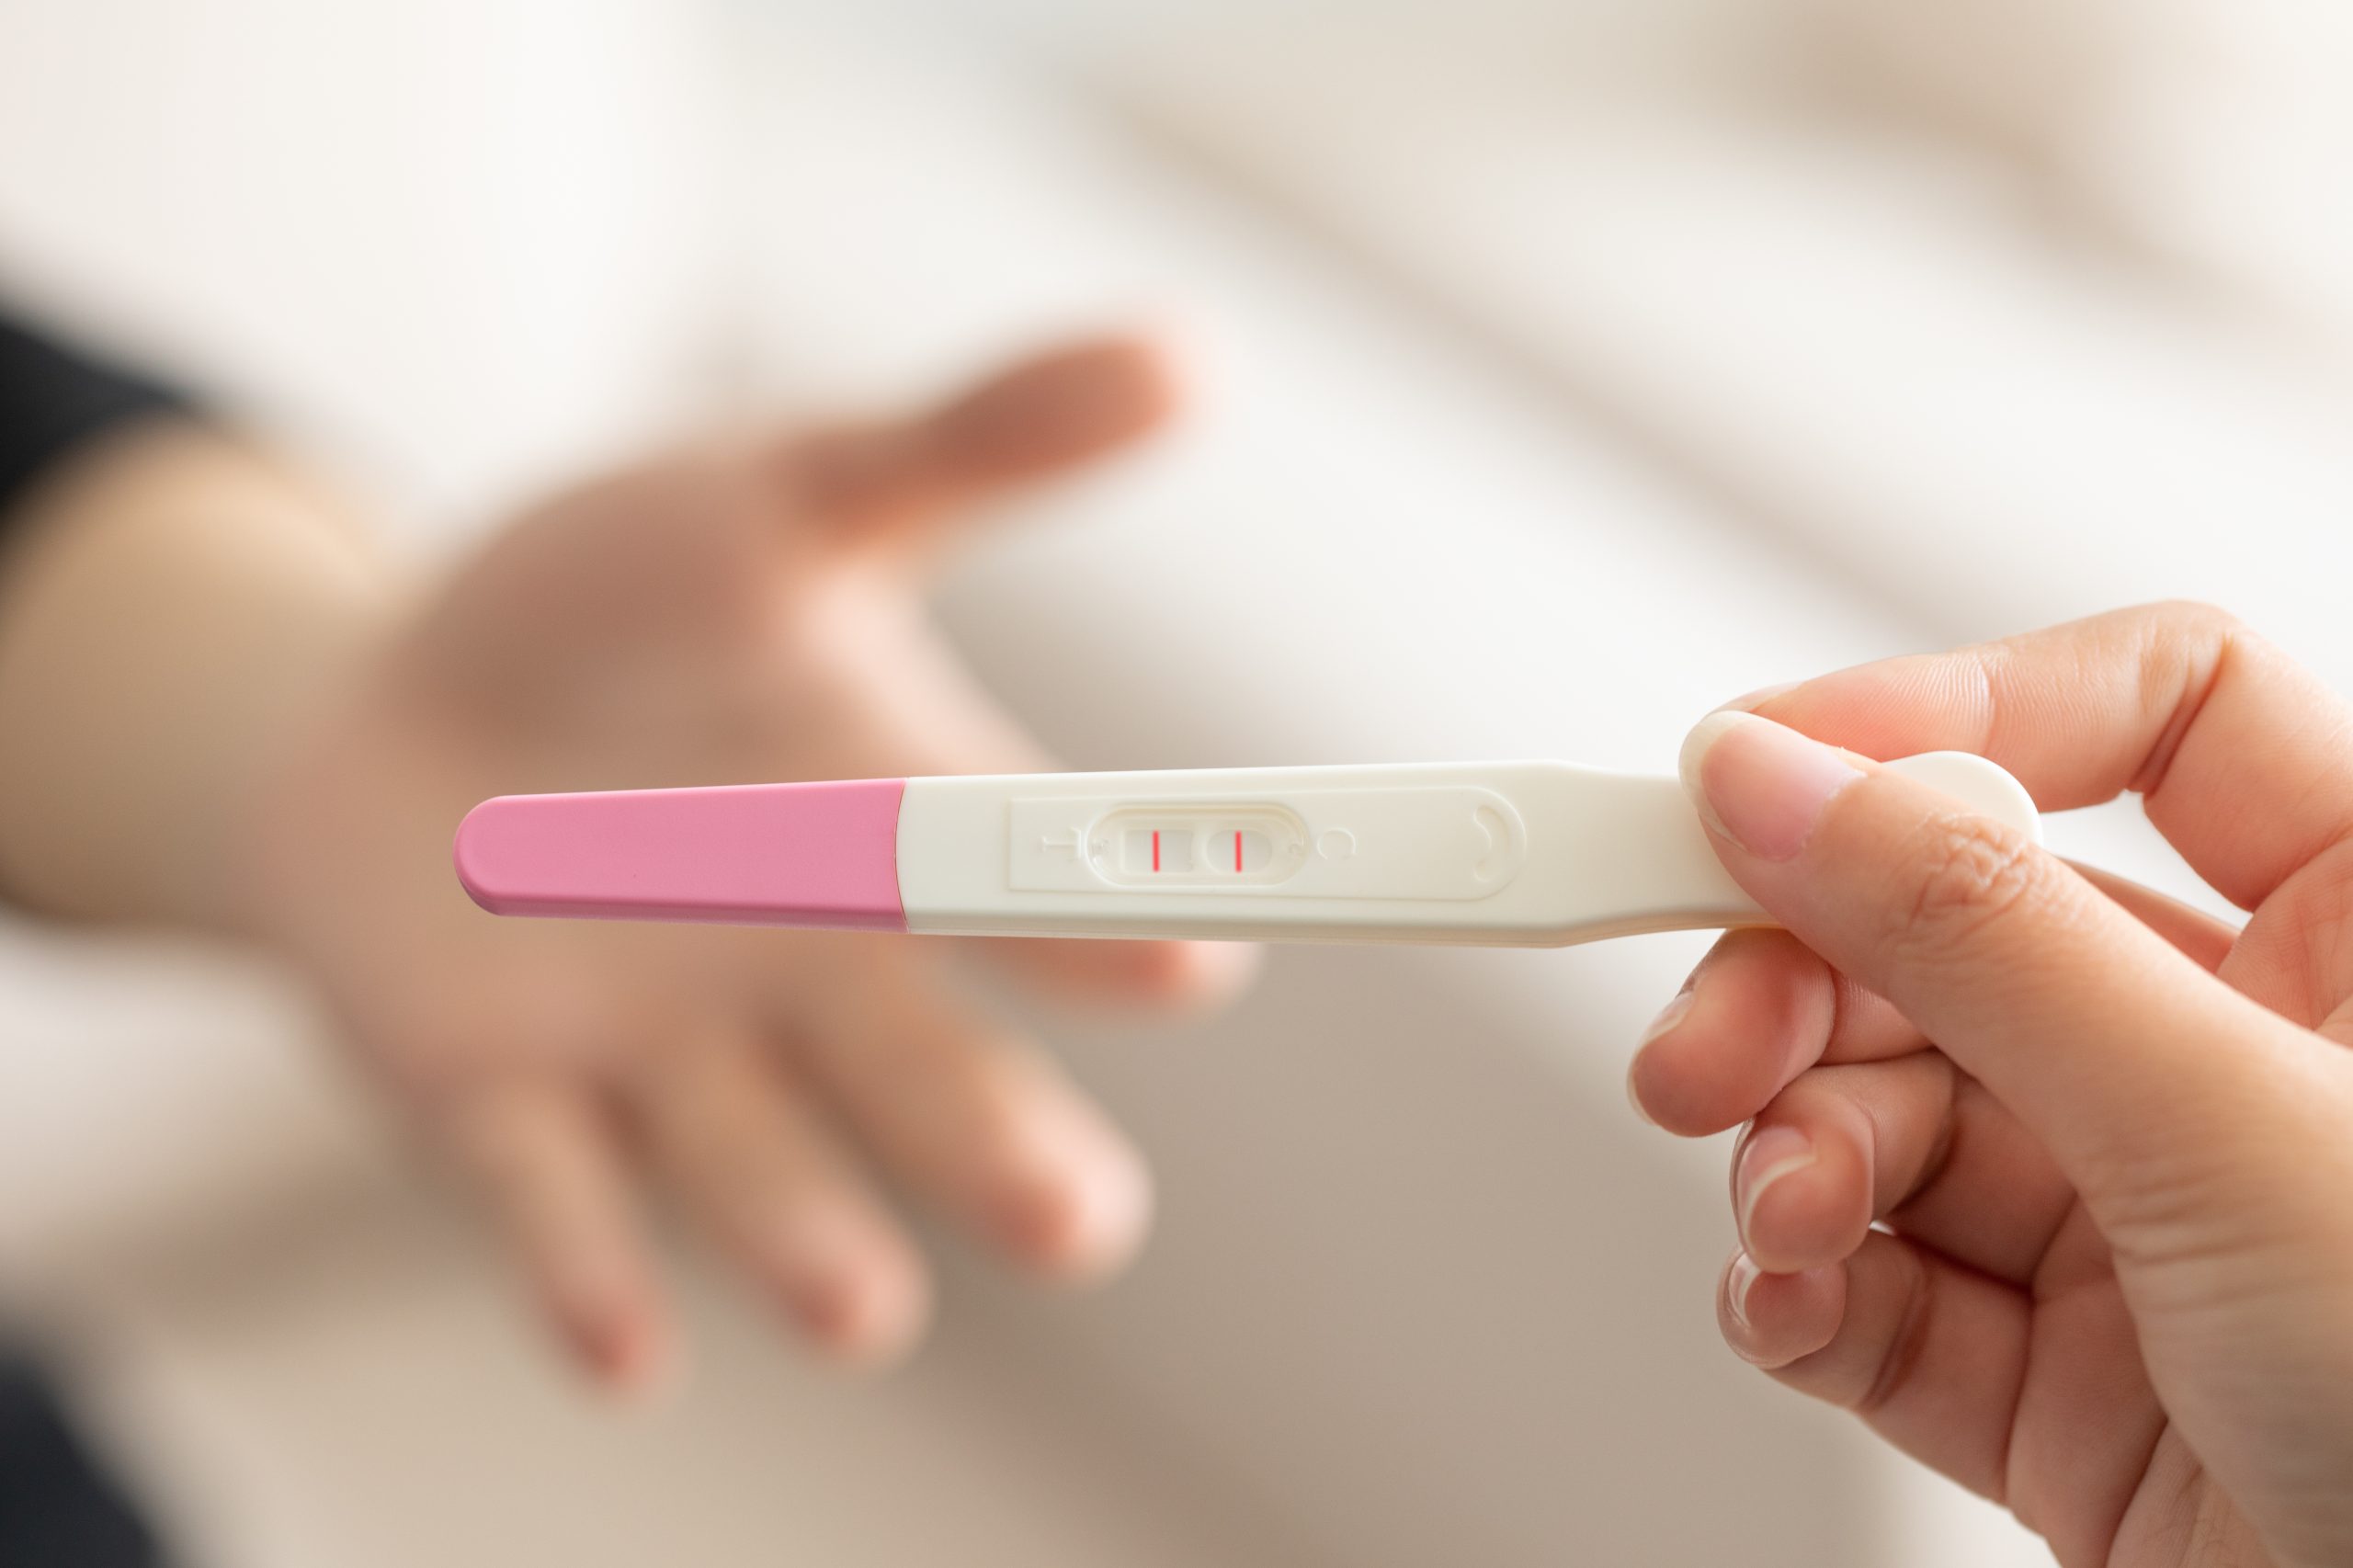 Тест на беременность в руках у девушки. Тест на беременность. Тест для беременных. Женская рука с тестом на беременность. Положительный тест на беременность.